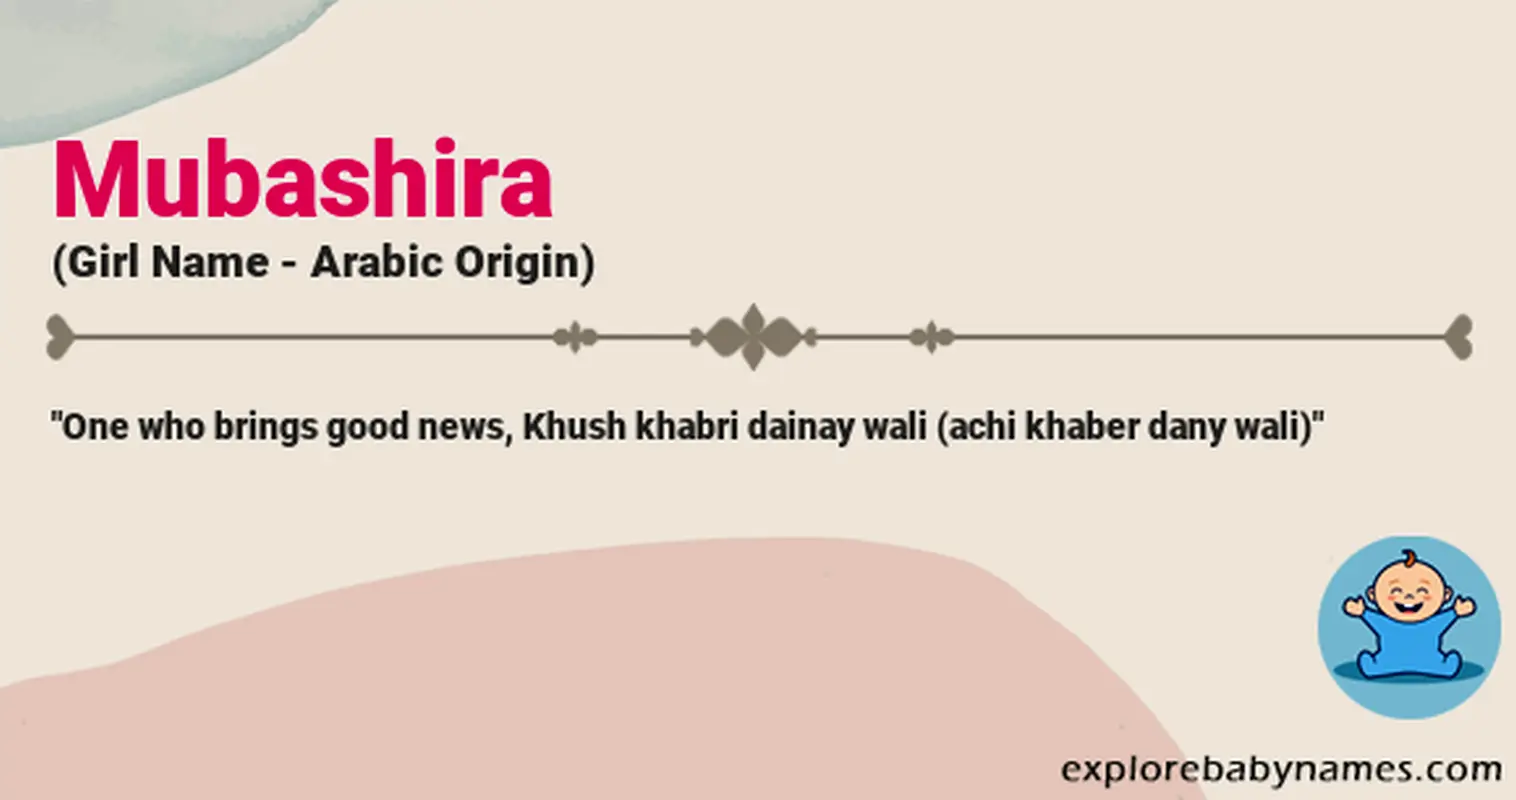 Meaning of Mubashira